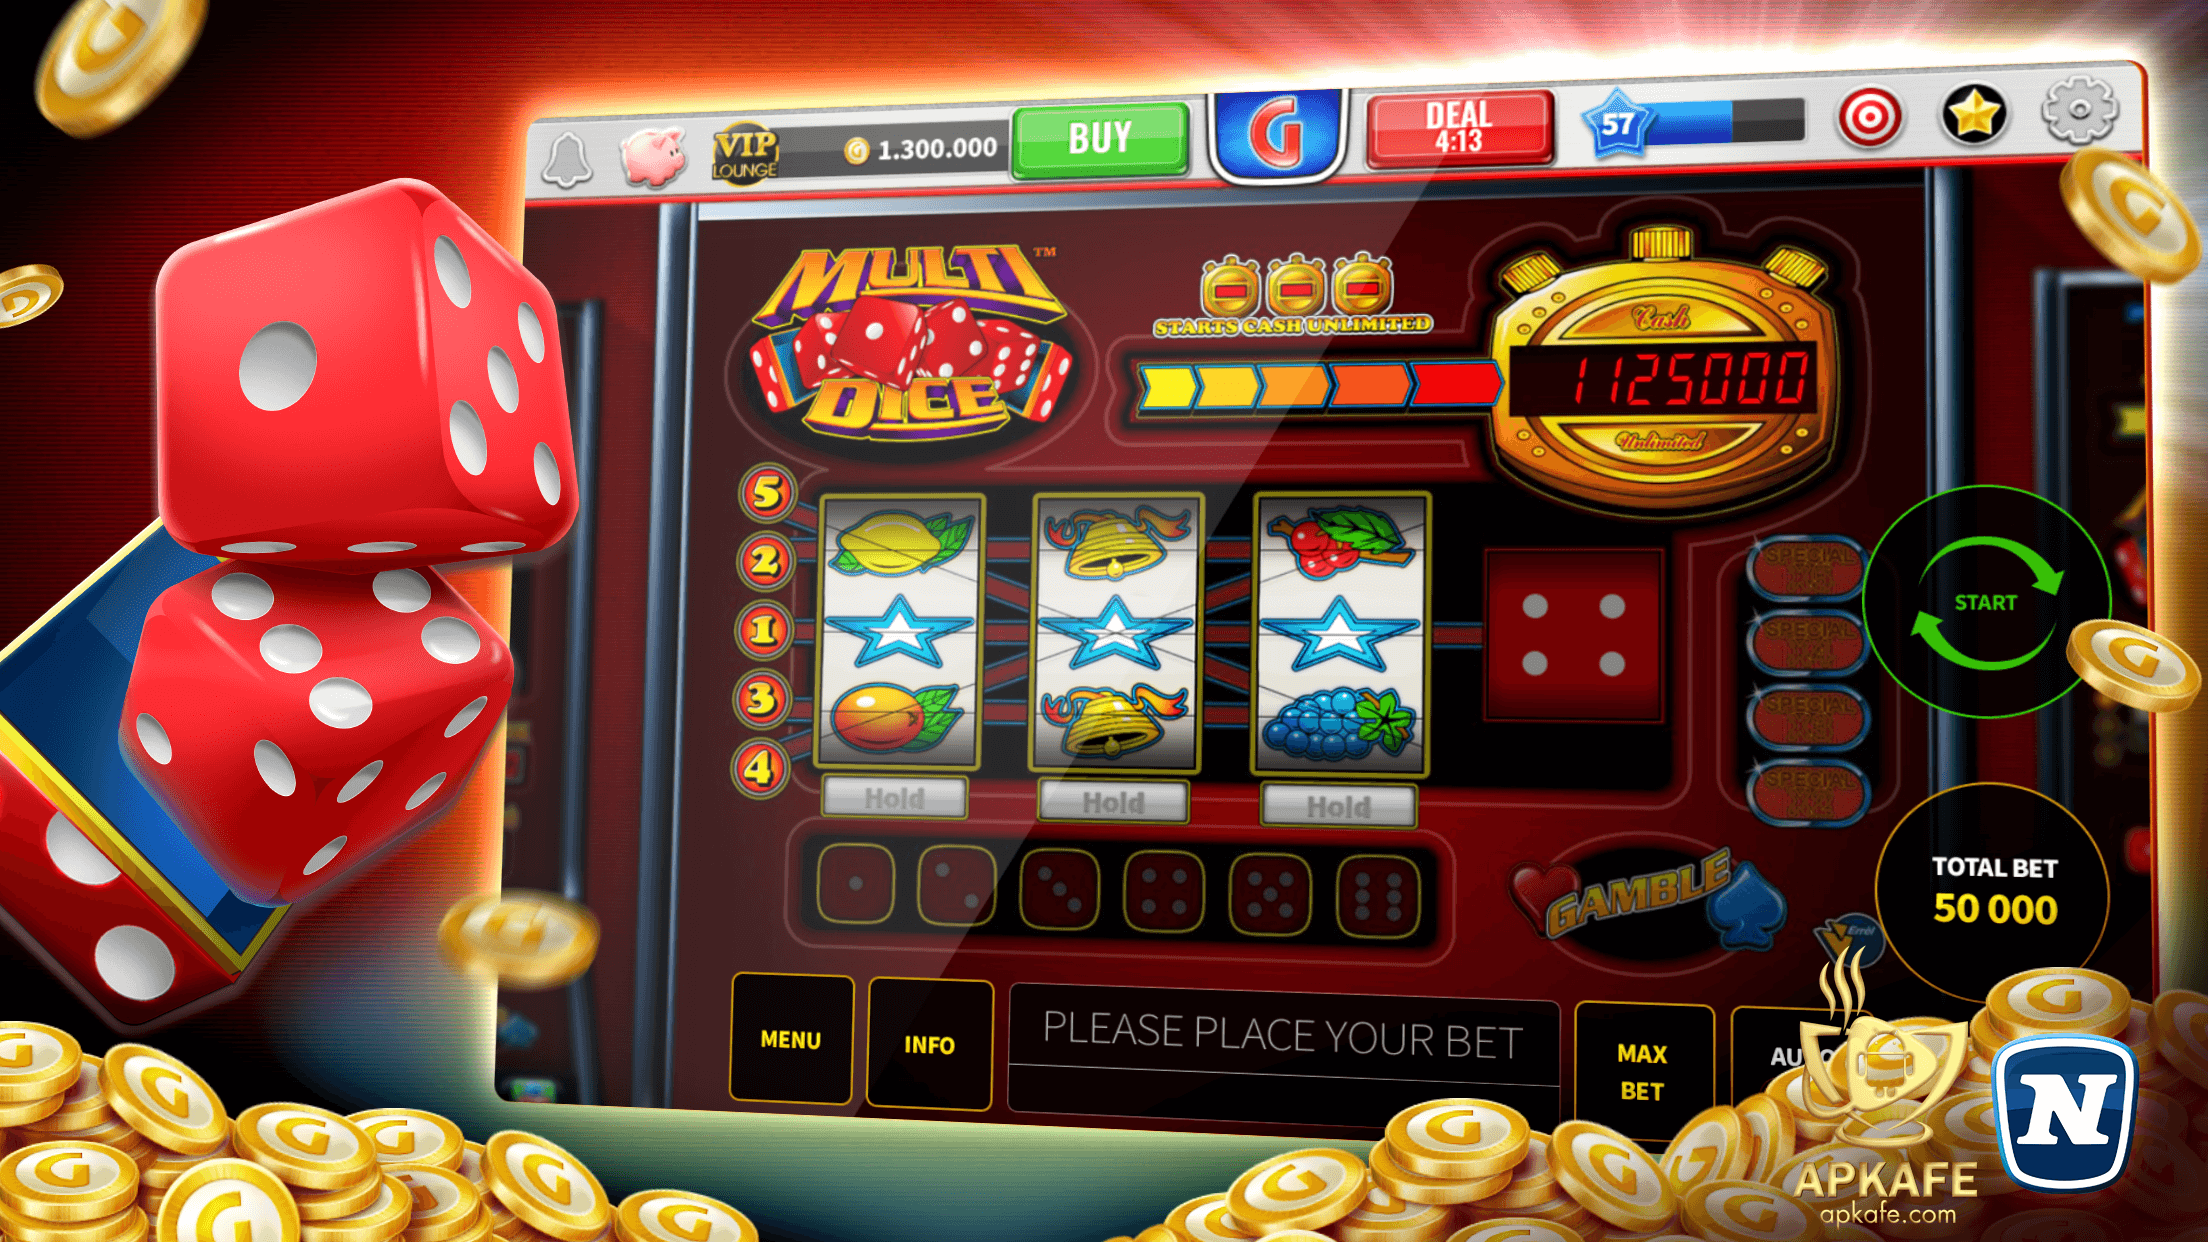 Gaminator Casino Slots – Play Slot Machines 777